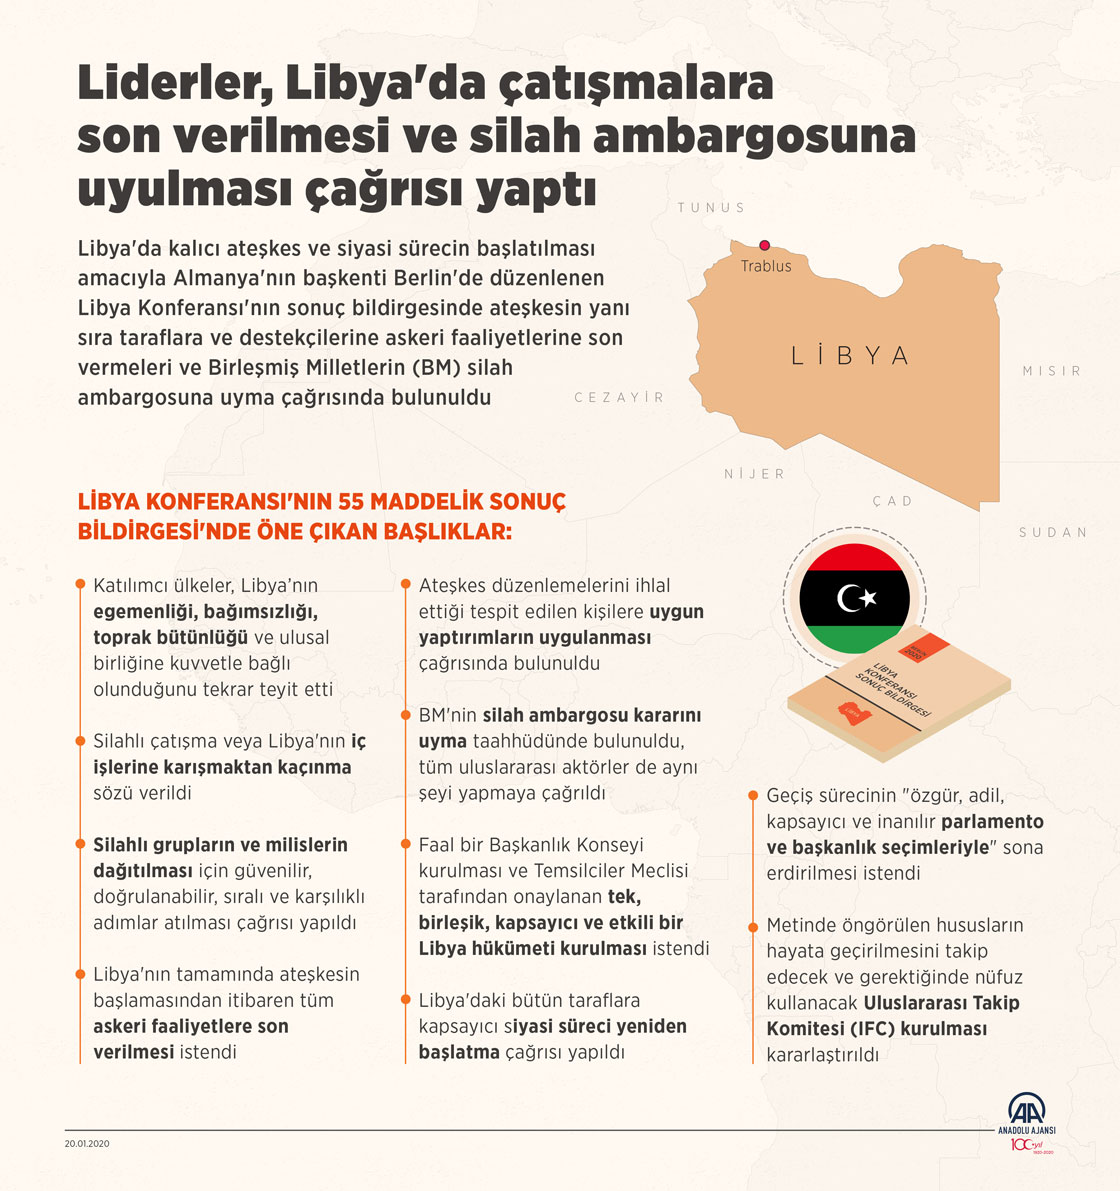  Liderler, Libya'da çatışmalara son verilmesi ve silah ambargosuna uyulması çağrısı yaptı